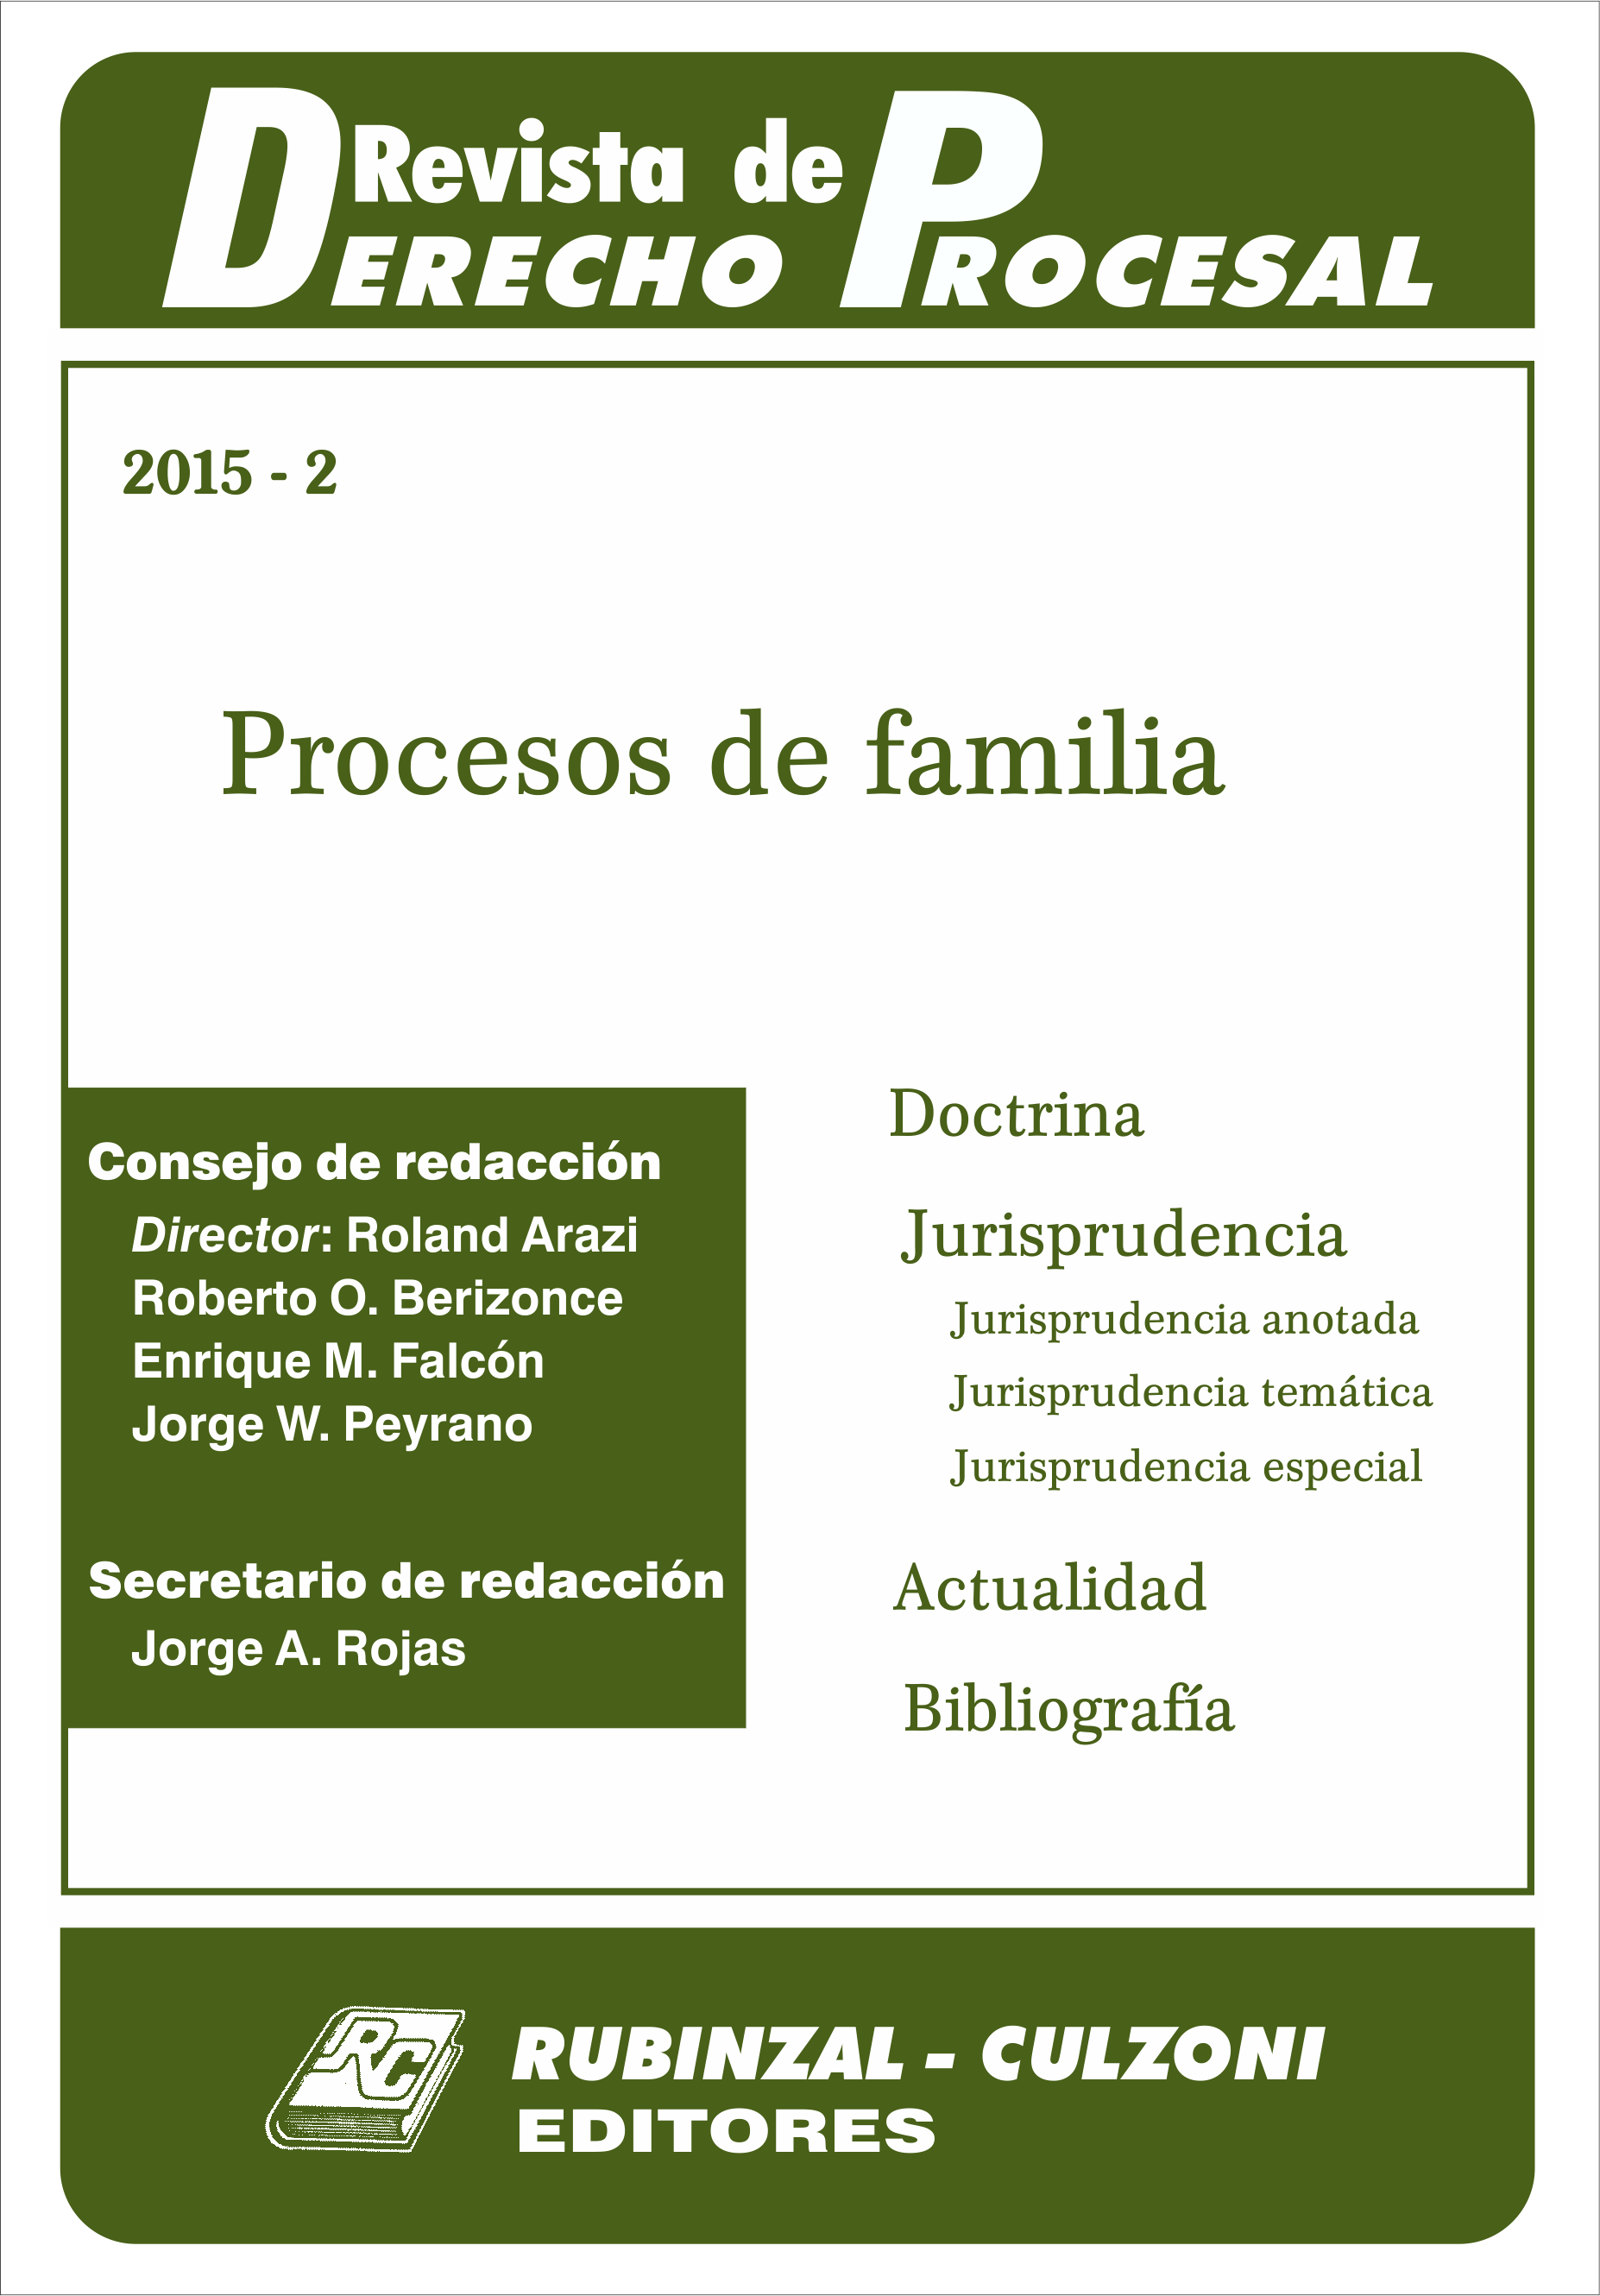 Revista de Derecho Procesal - Procesos de familia